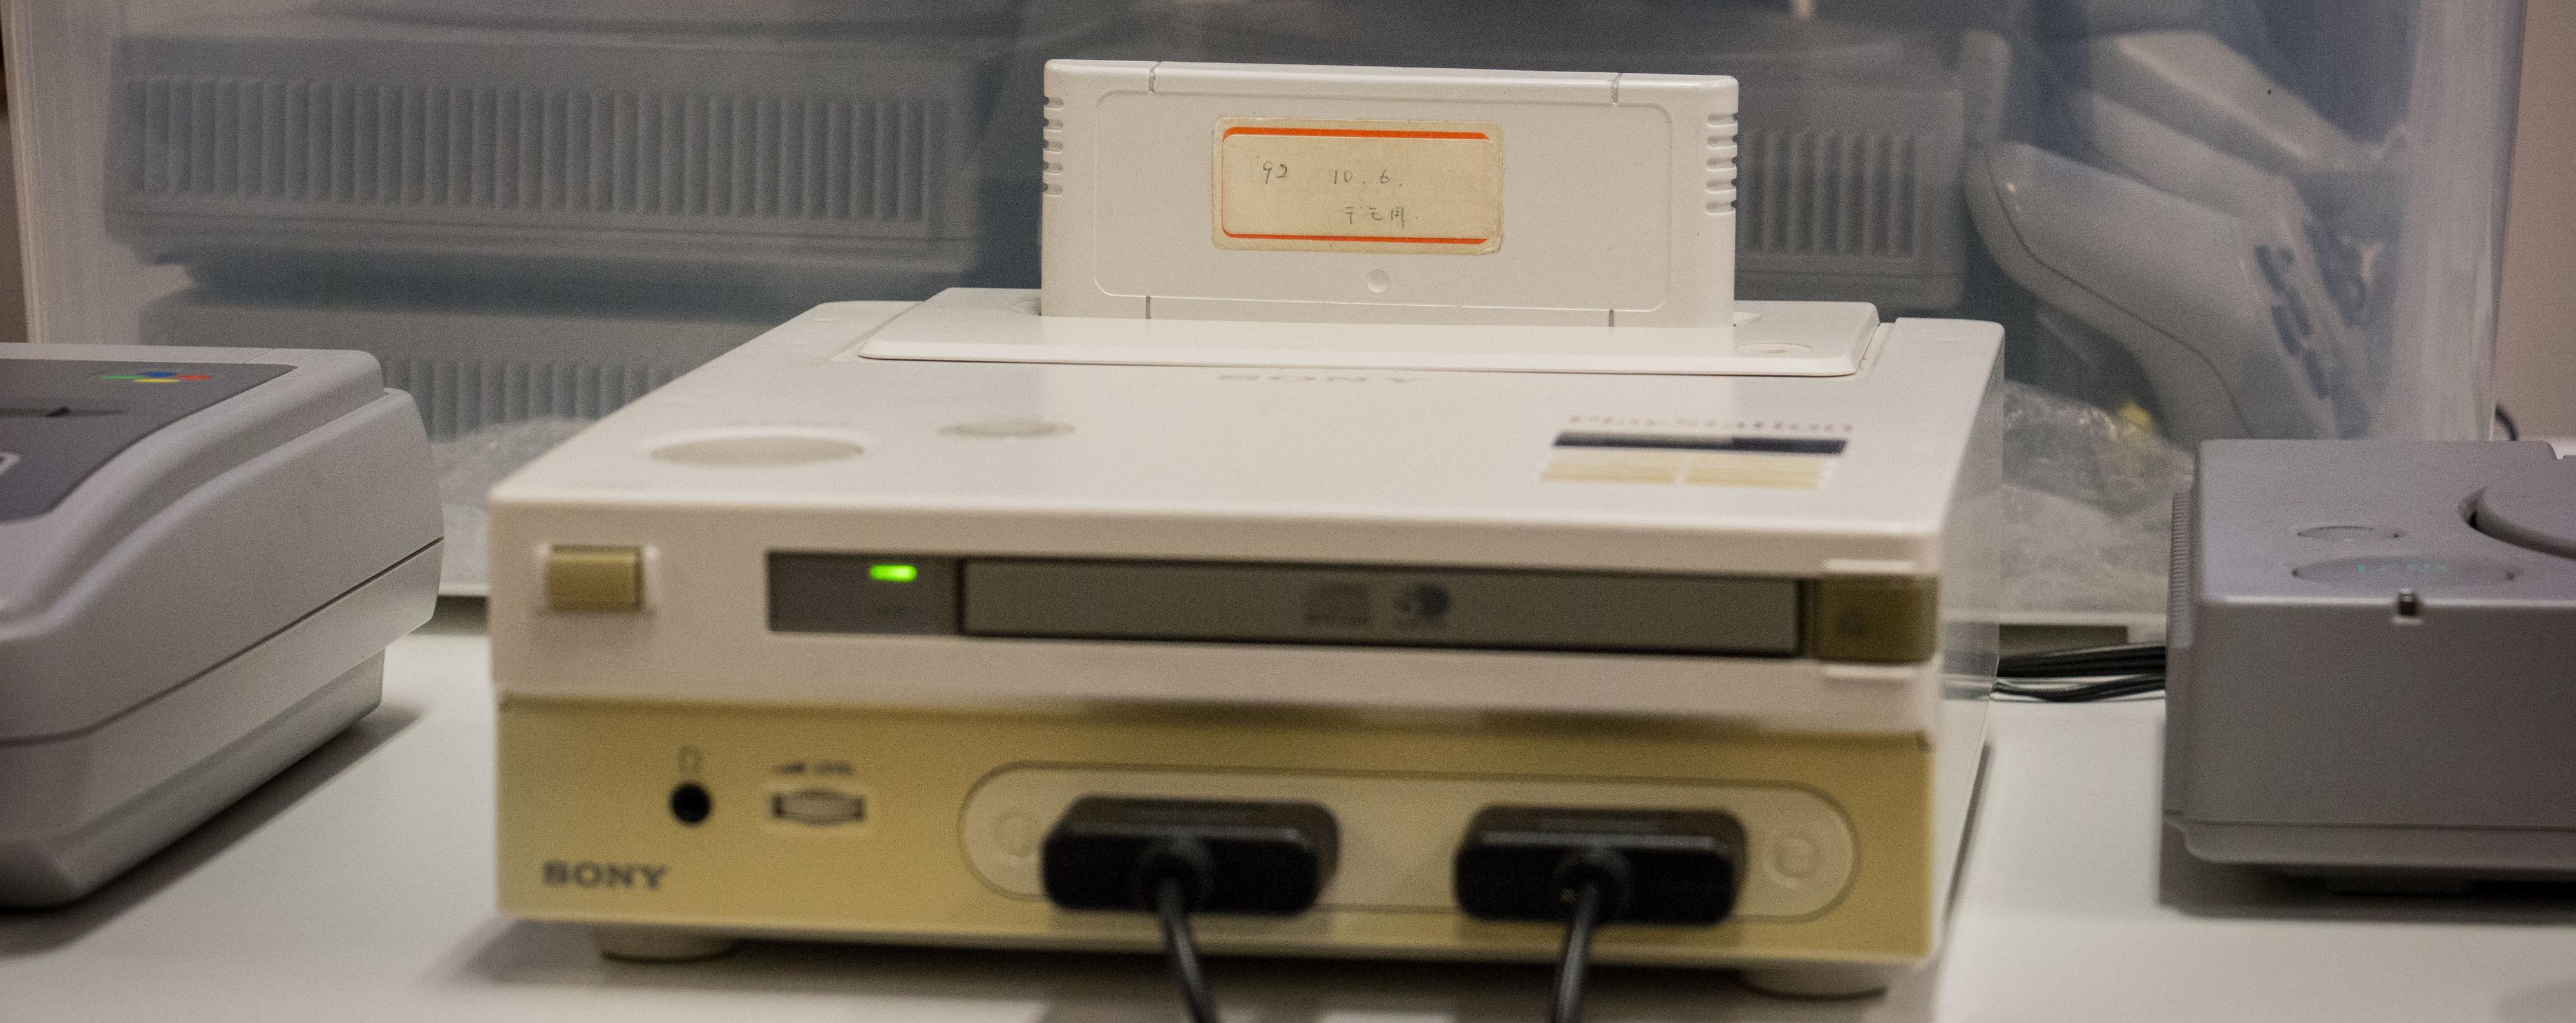 Med en CD-rom-spiller på framsiden og plass til spillkasetter på toppen, var det meningen at konsollen skulle kunne spille både gamle SNES-spill, men også nye CD-spill fra Sony.